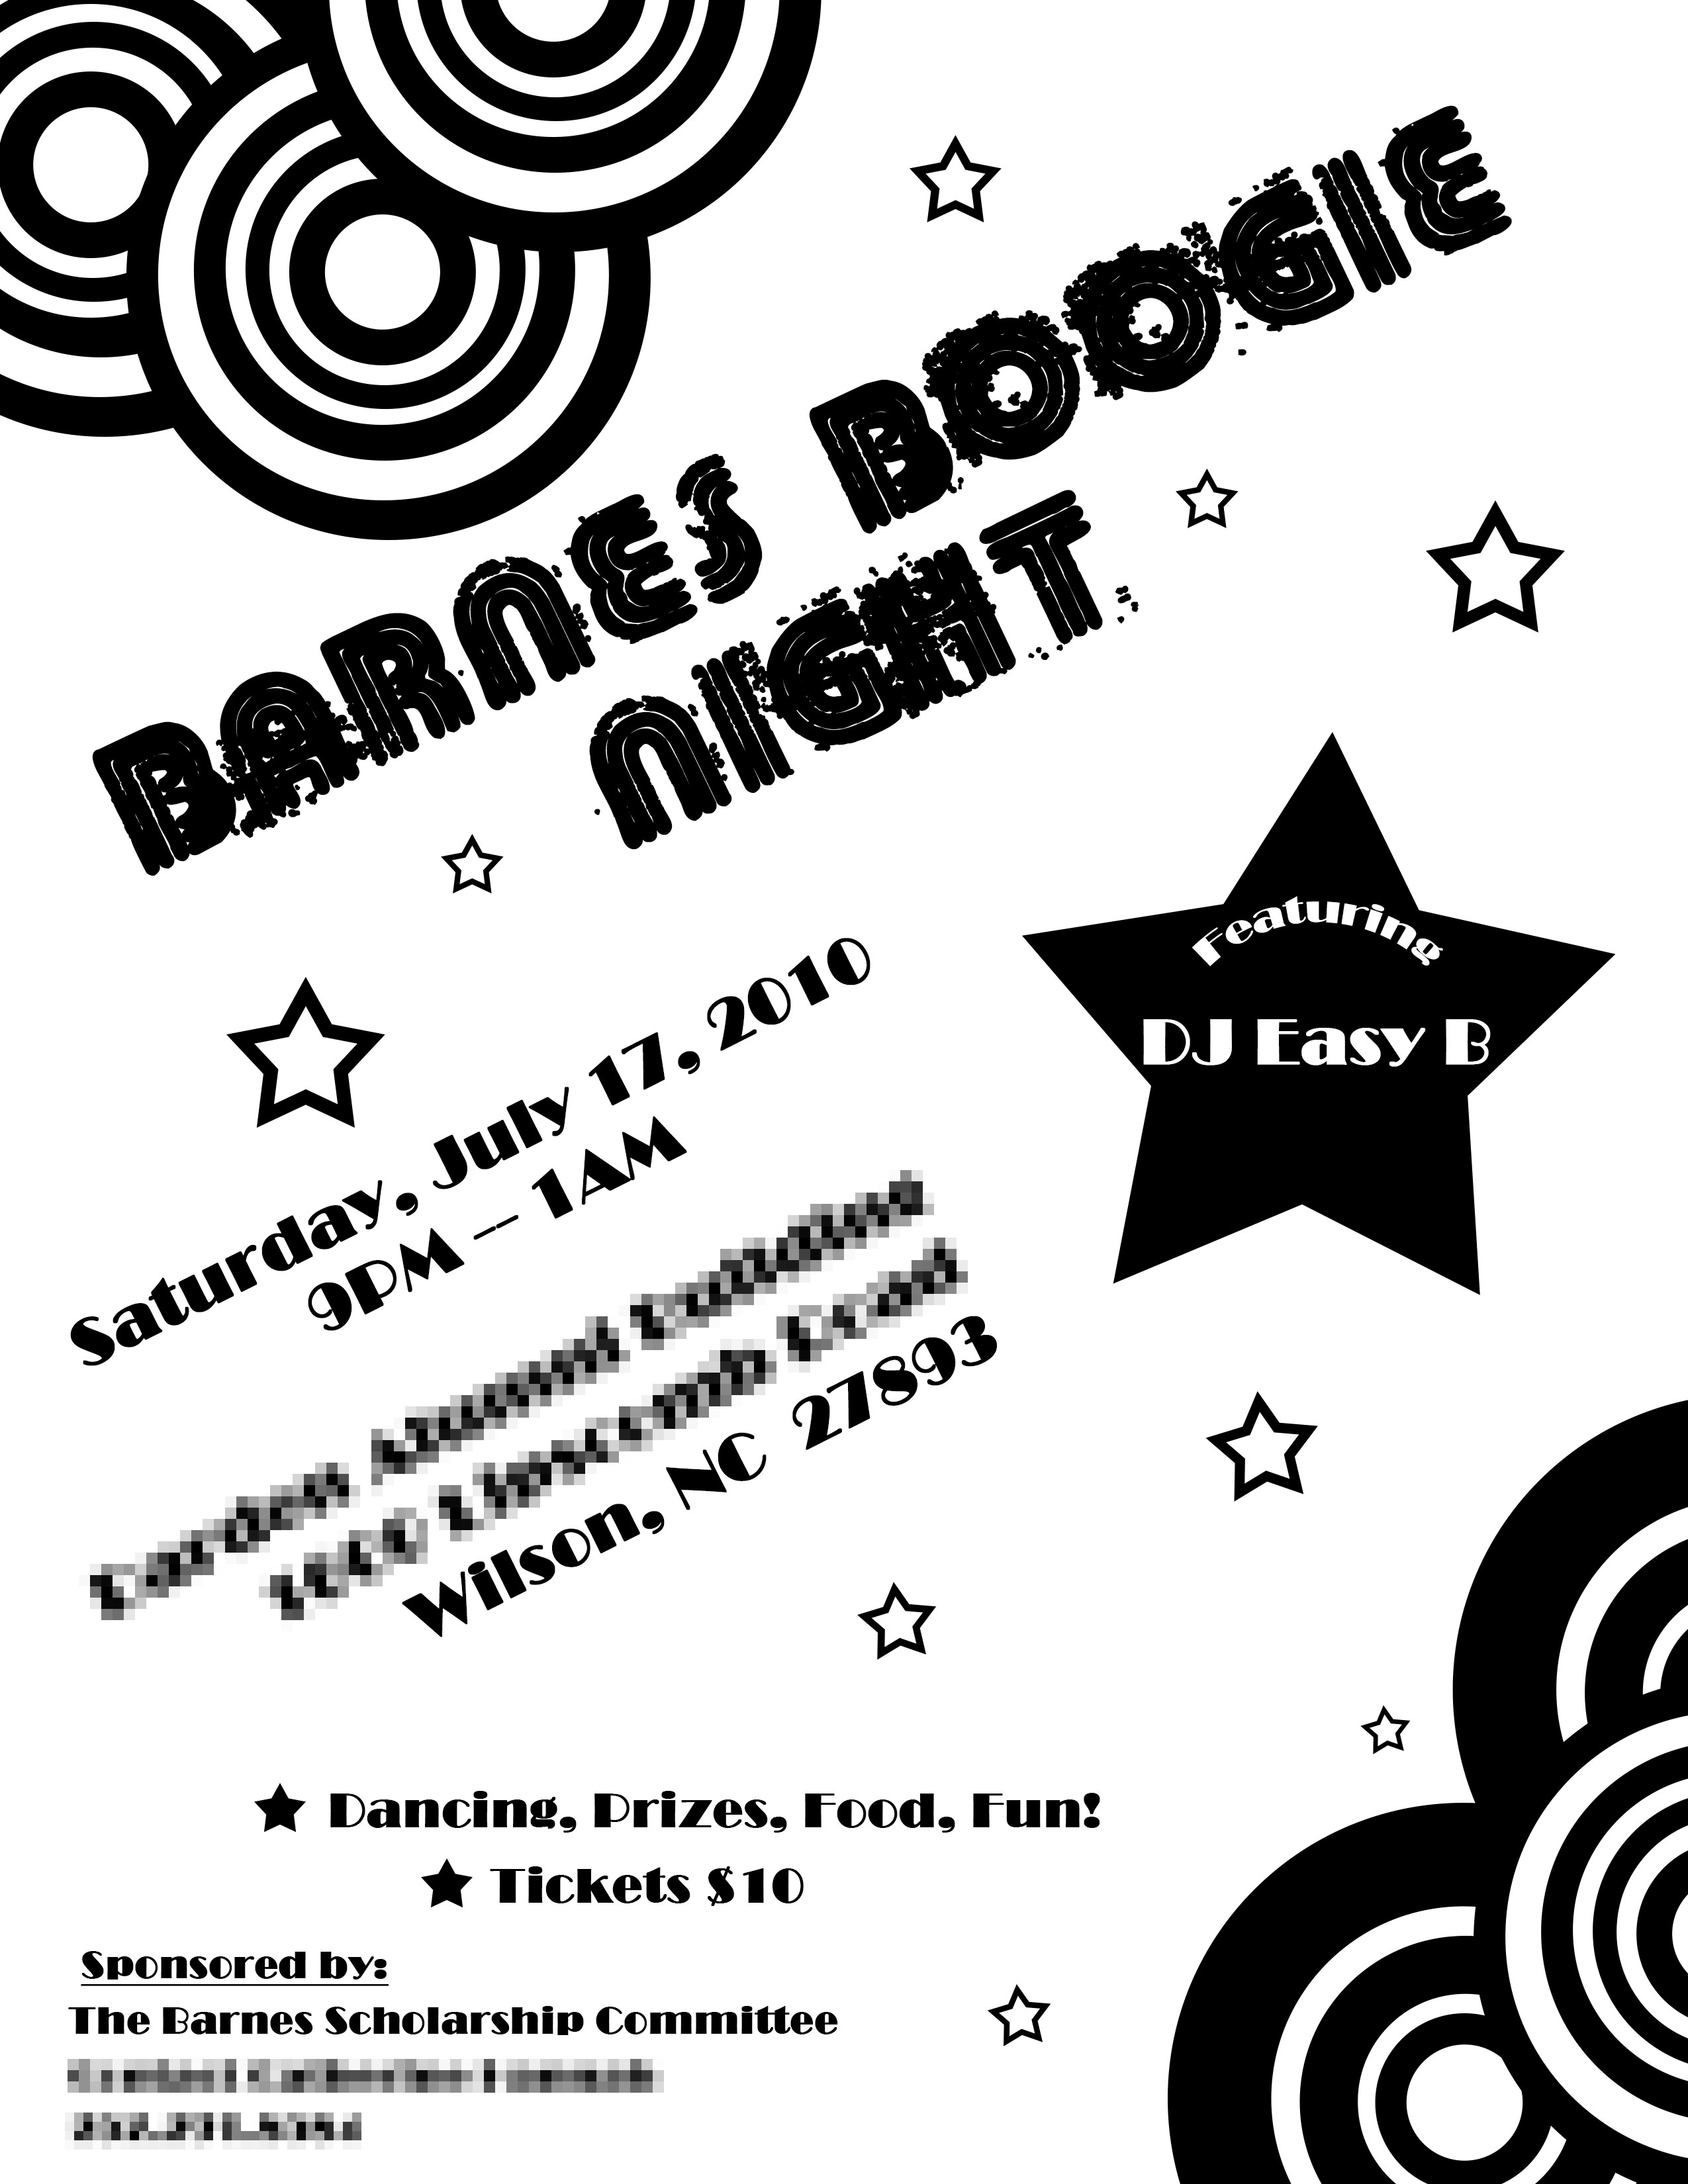 Barnes Scholarship Committee event flyer